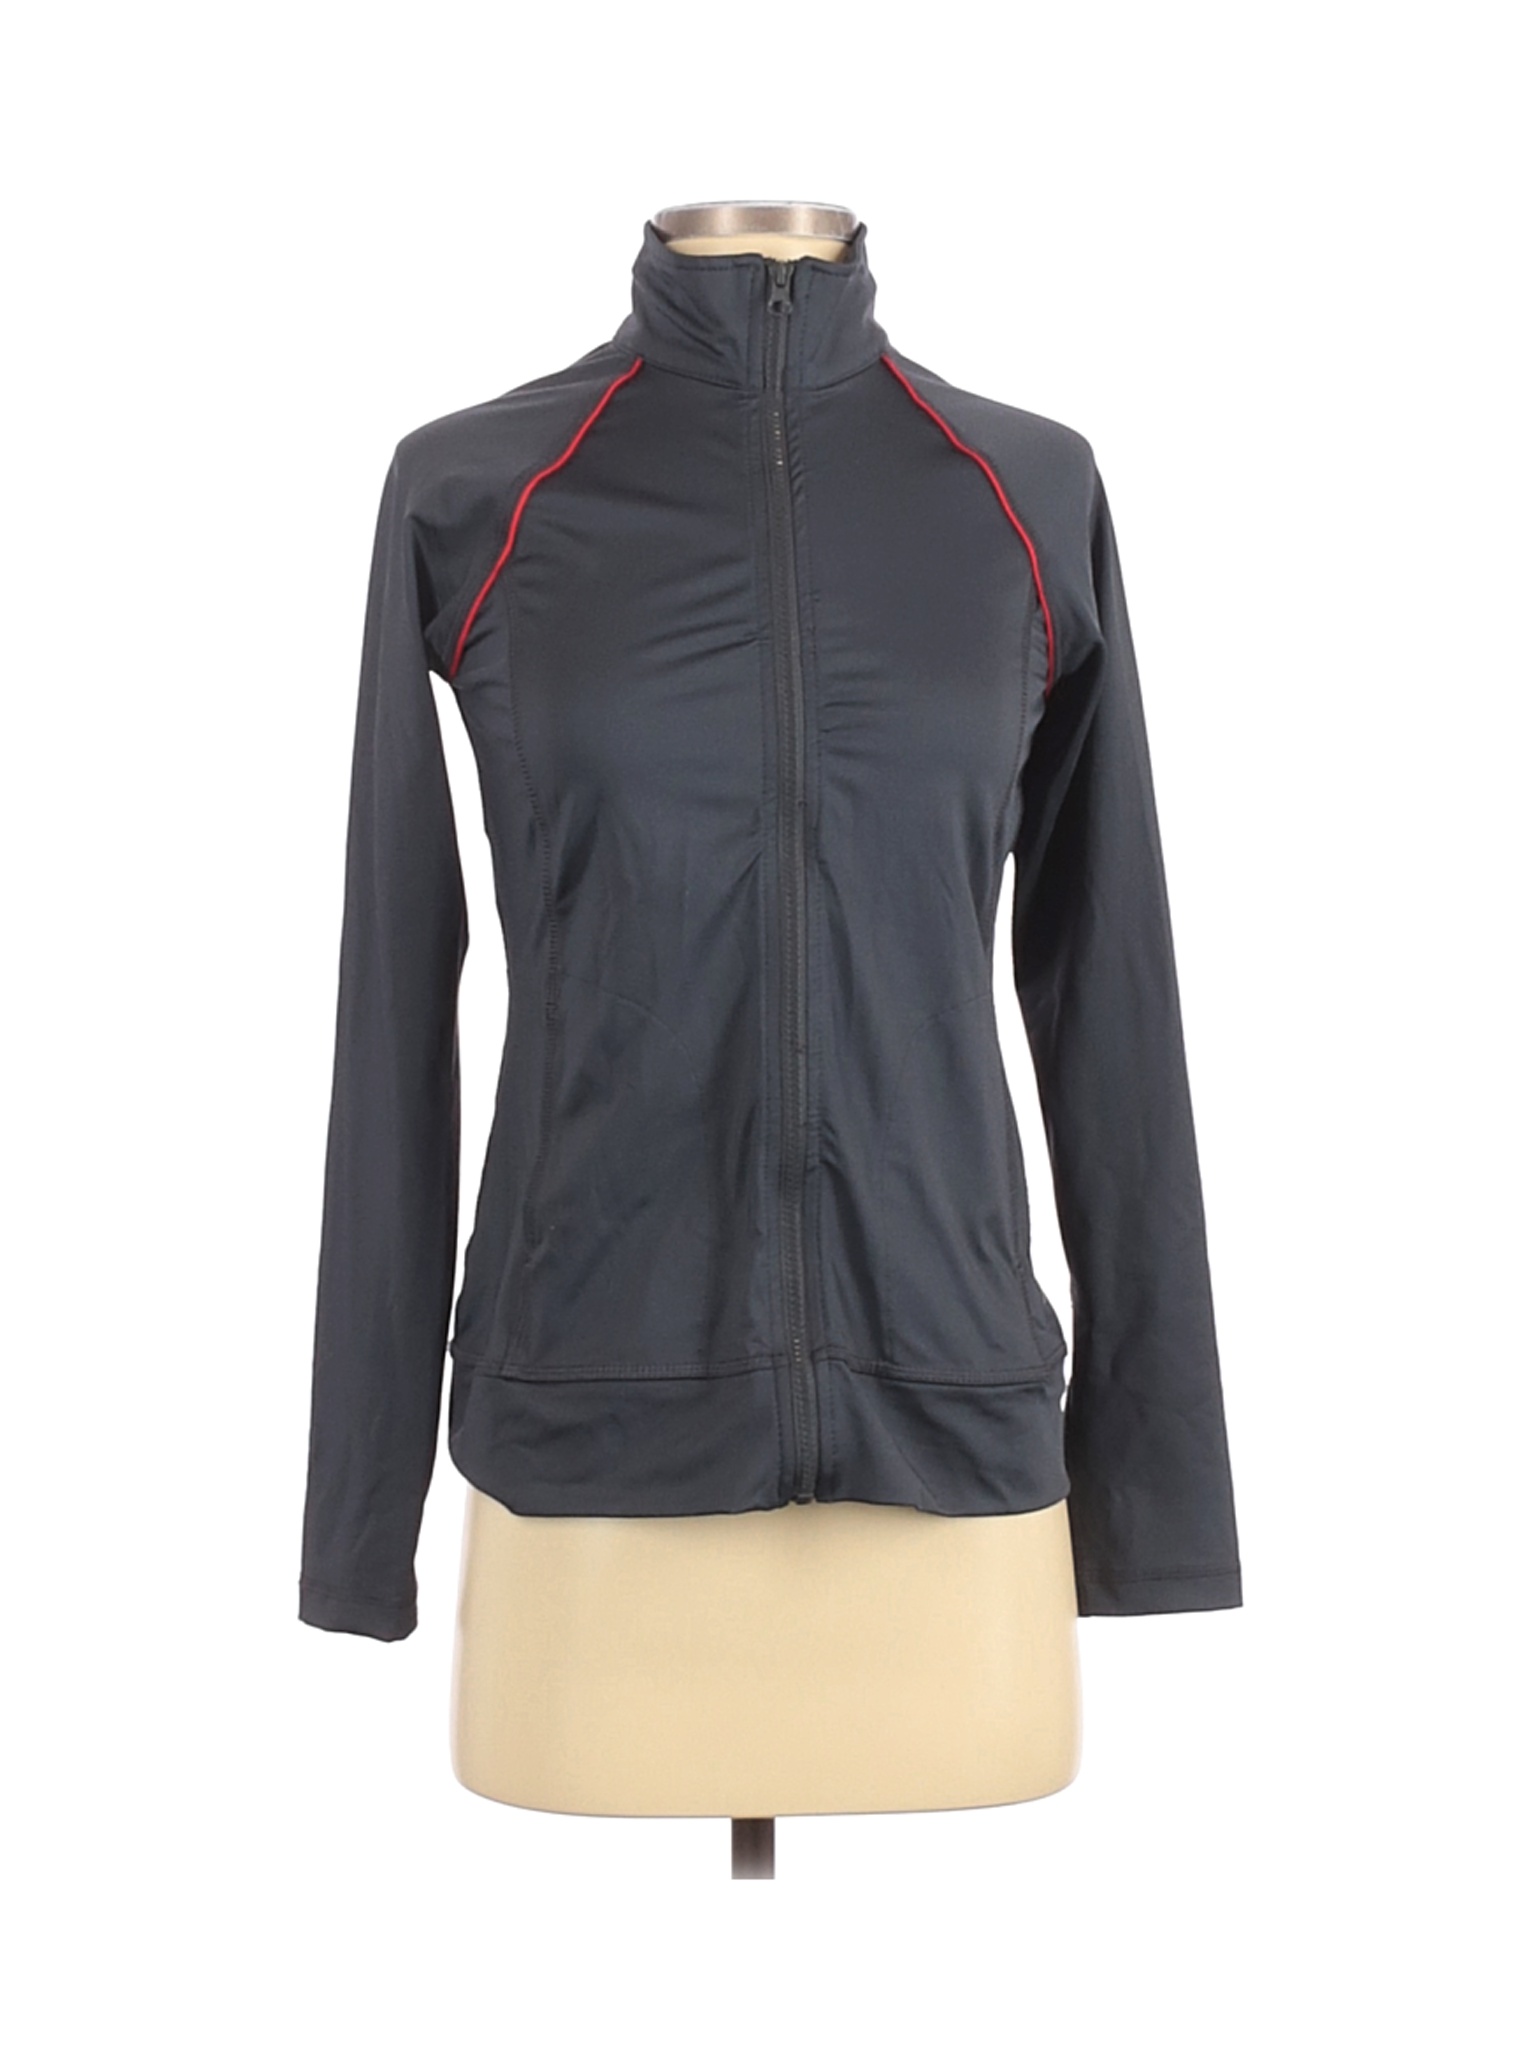 Danskin Now Women Gray Track Jacket XS | eBay